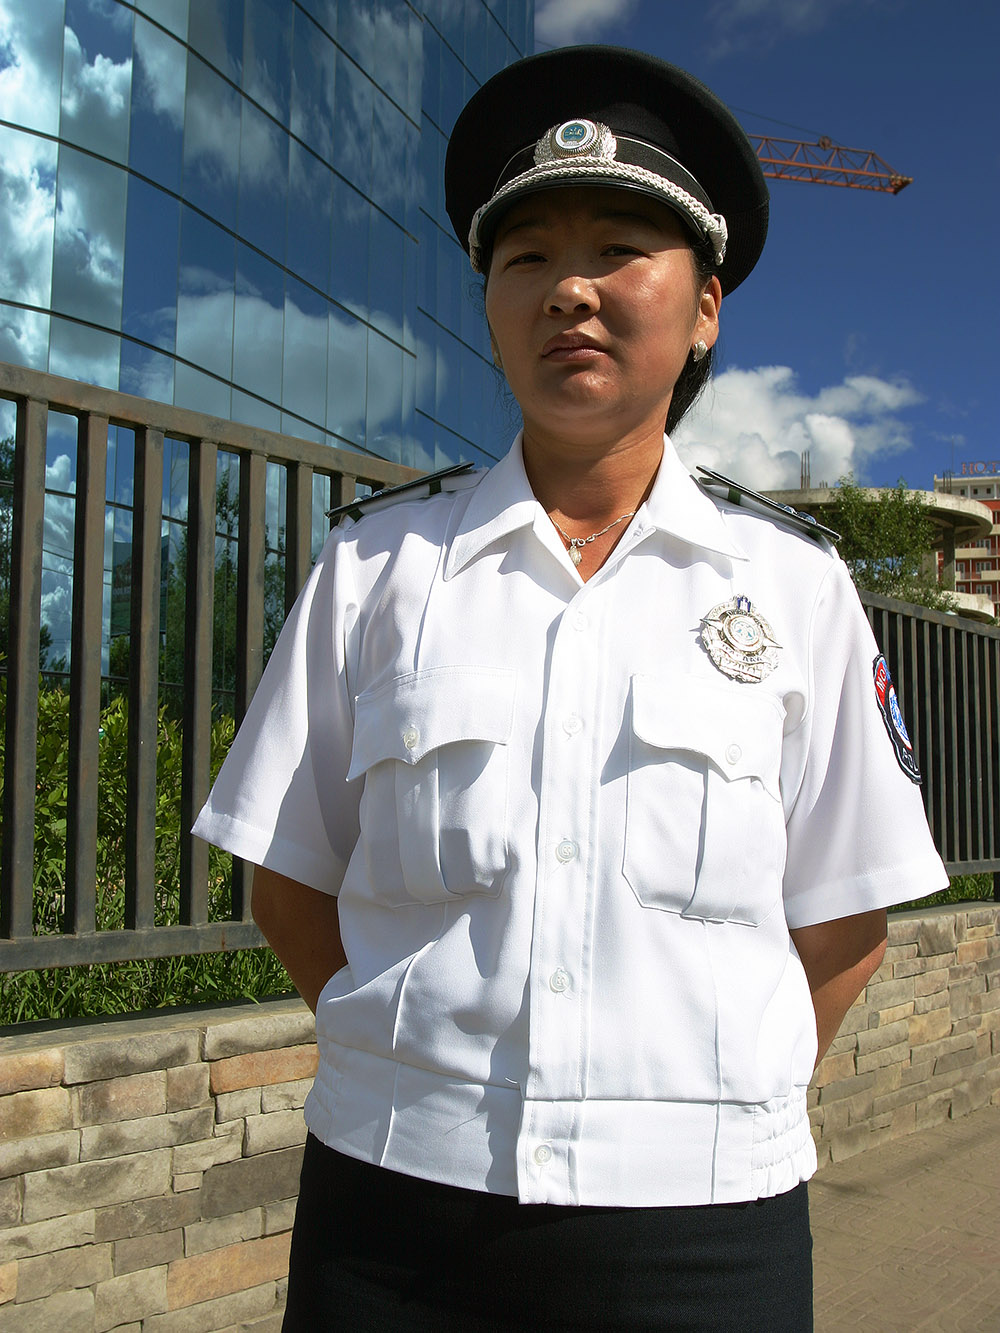 mongolia/ub_policewoman